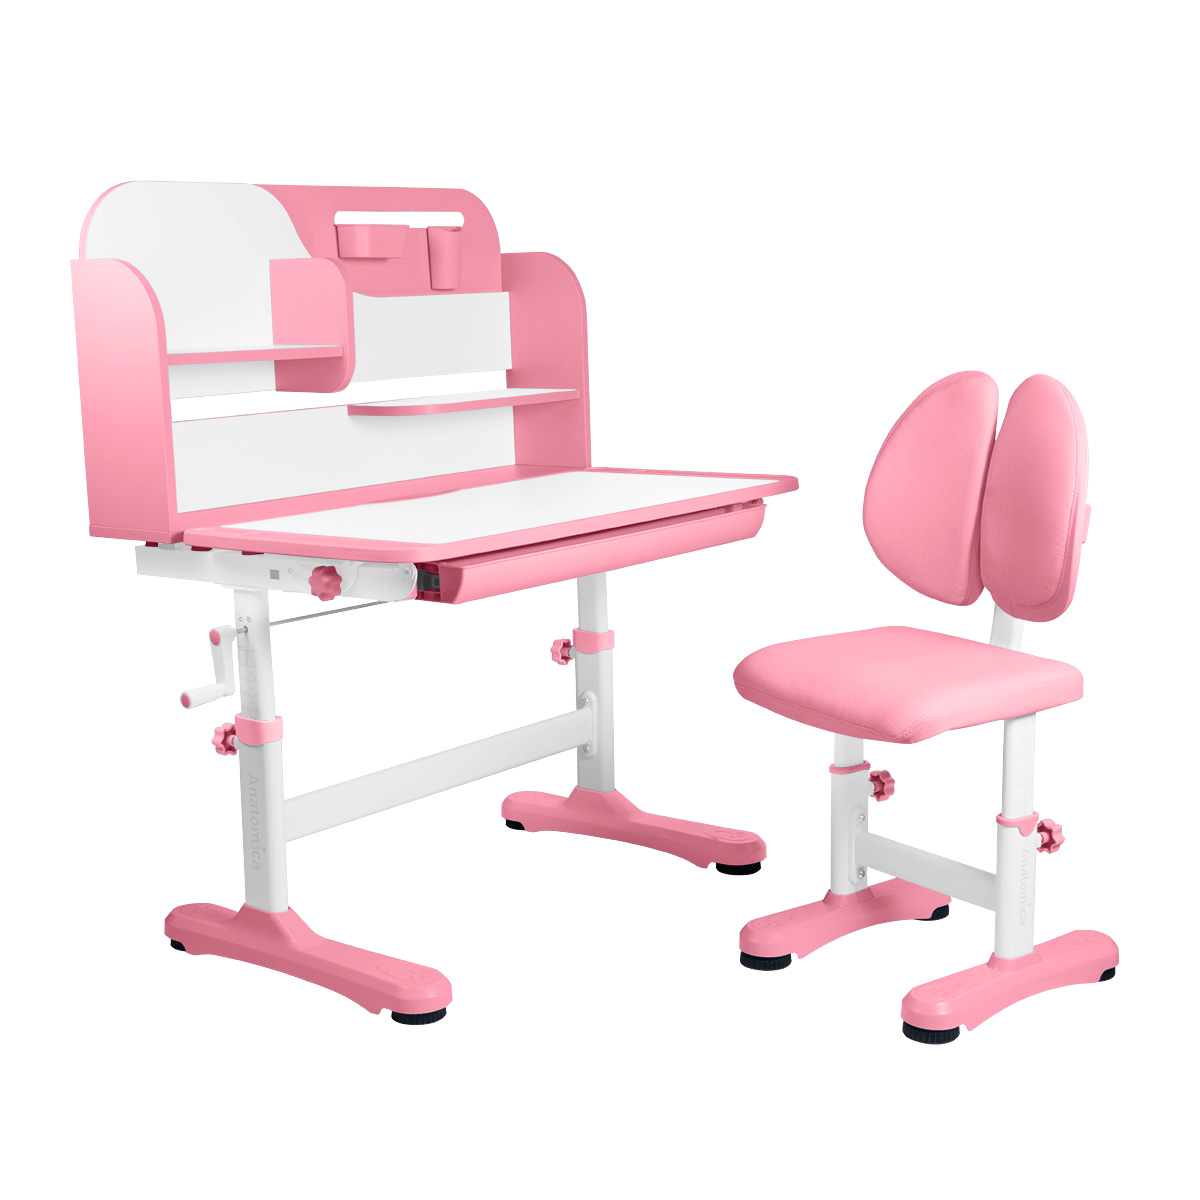 Комплект Anatomica Amadeo парта, стул, надстройка, выдвижной ящик, розовый комплект парта стул выдвижной ящик подставка anatomica amata белый розовый